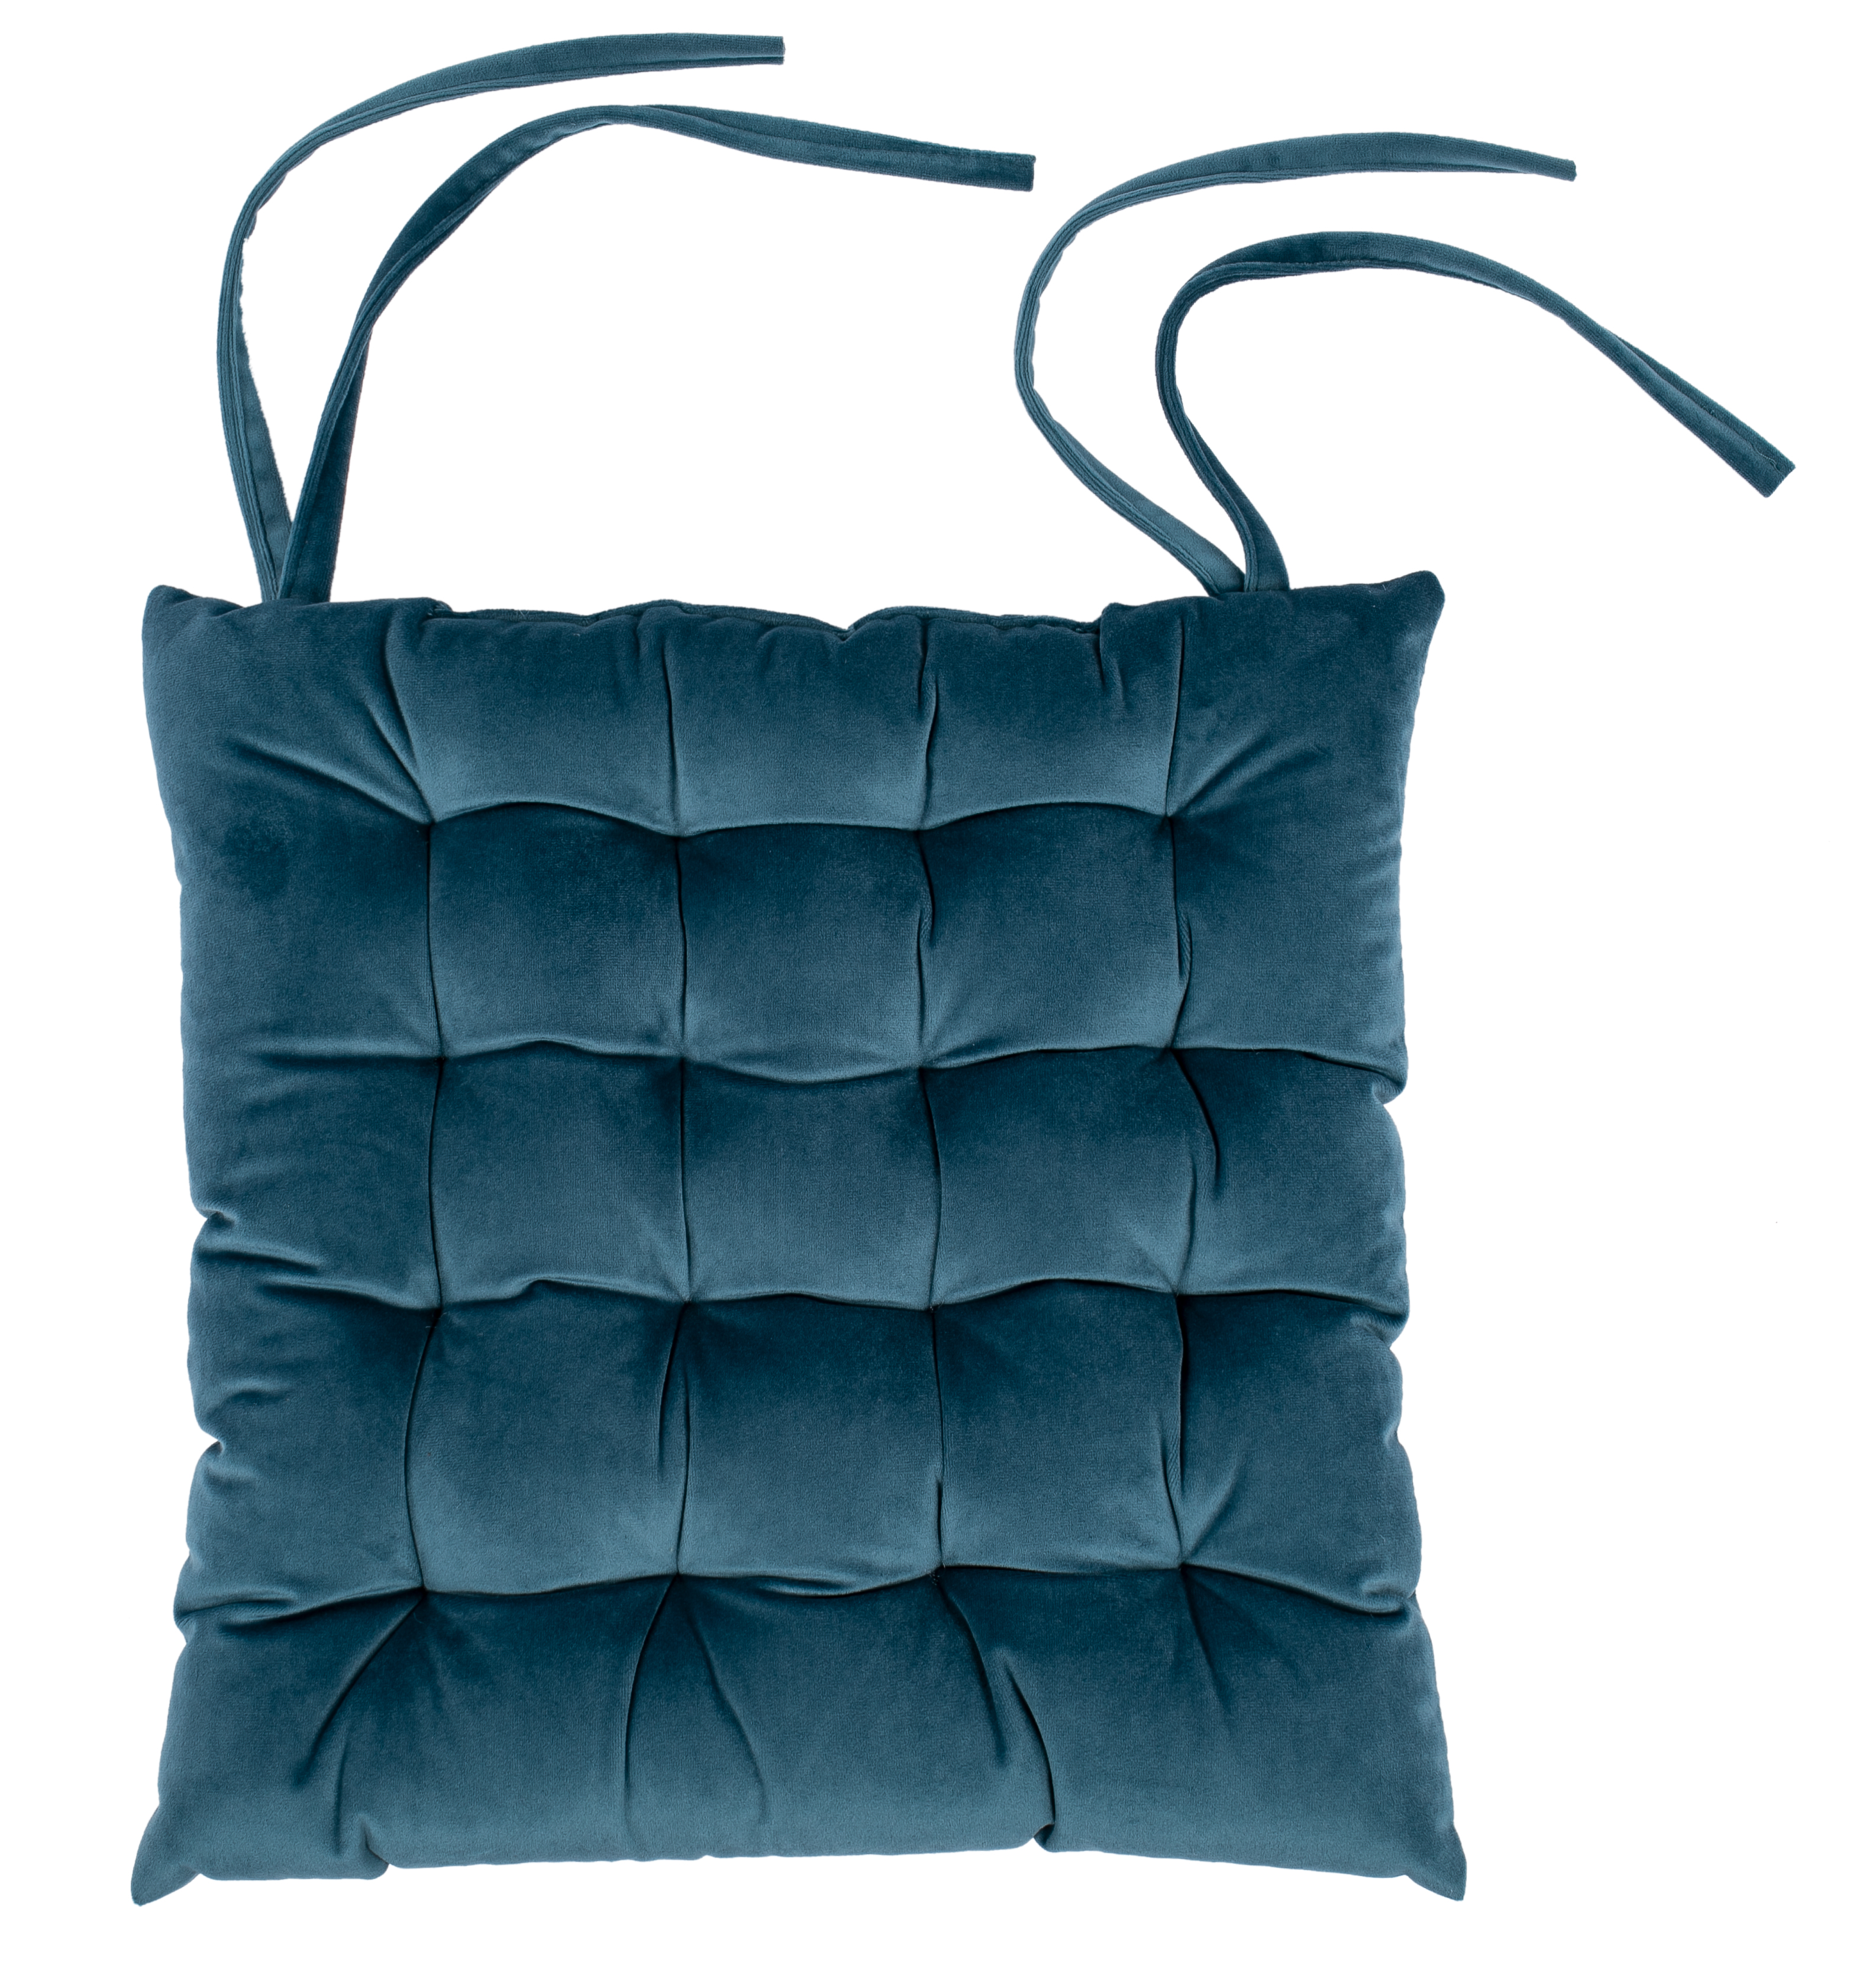 Galette de chaise Microvelvet 37x37cm - 16 thuck, coral blue